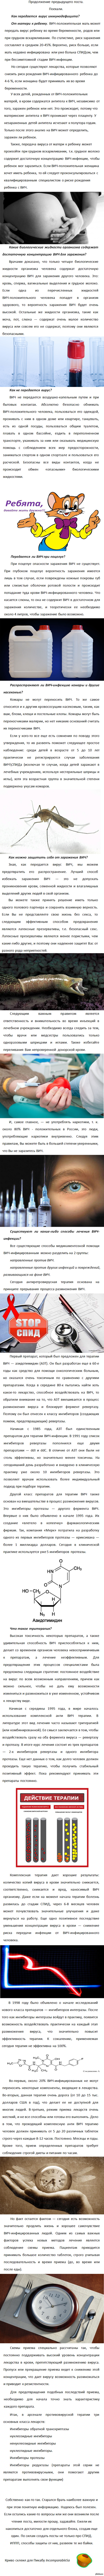    -   ? ( 2)   <a href="http://pikabu.ru/story/virus_immunodefitsita_cheloveka__chto_yeto_takoe_chast_1_1876818">http://pikabu.ru/story/_1876818</a>